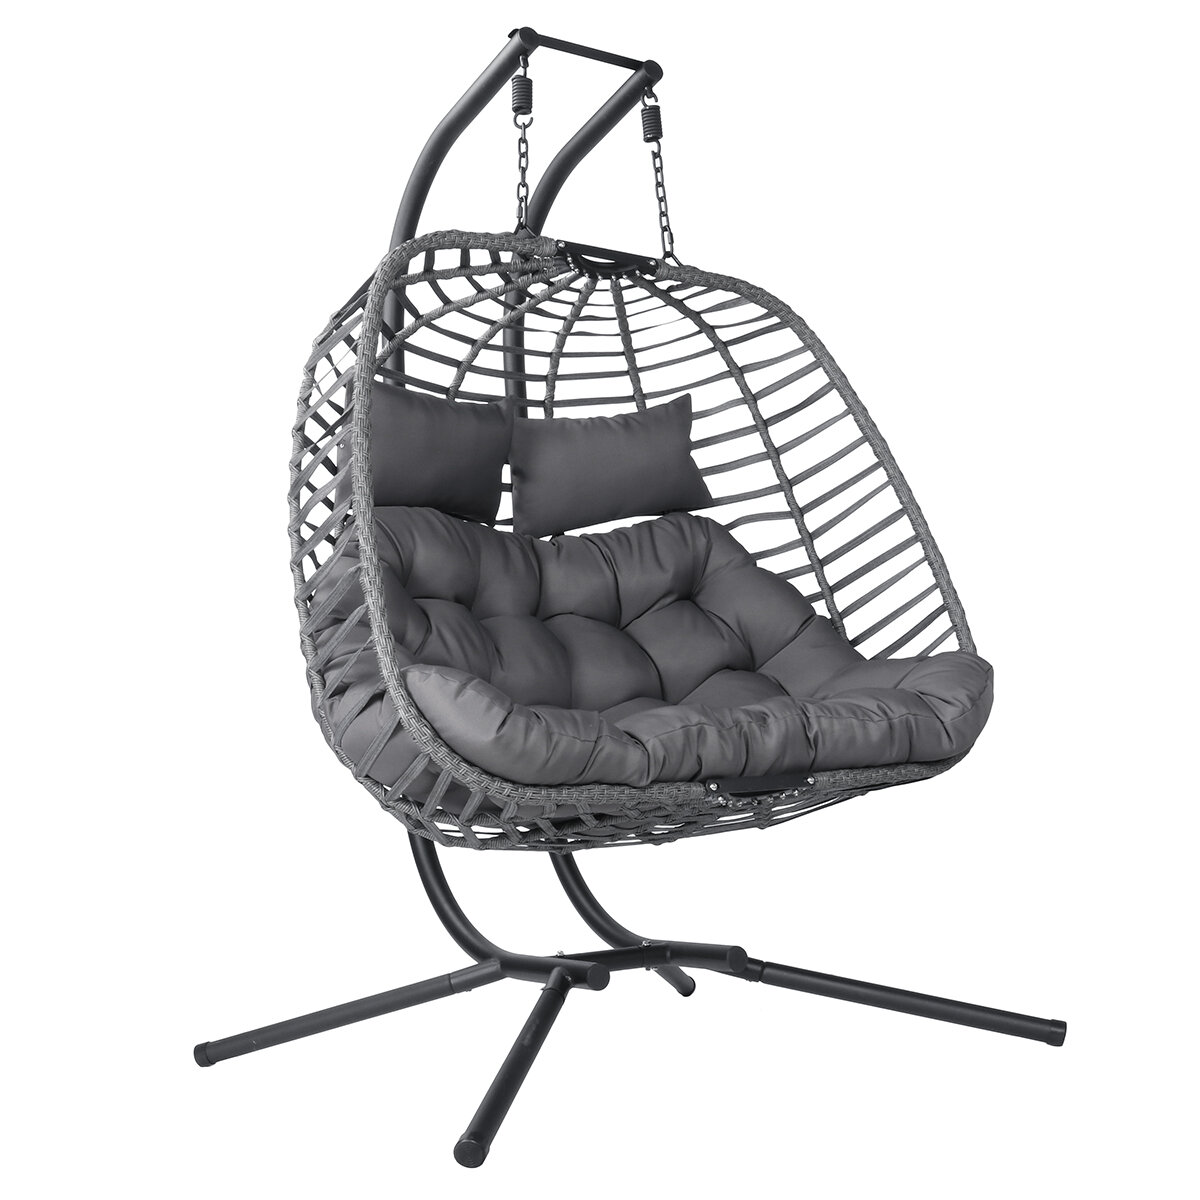 Krzesło wiszące na zewnątrz Patio Garden Egg Hammock Chair Podwójna osoba Swing Hanging Chair z ramą i poduszką siedzenia